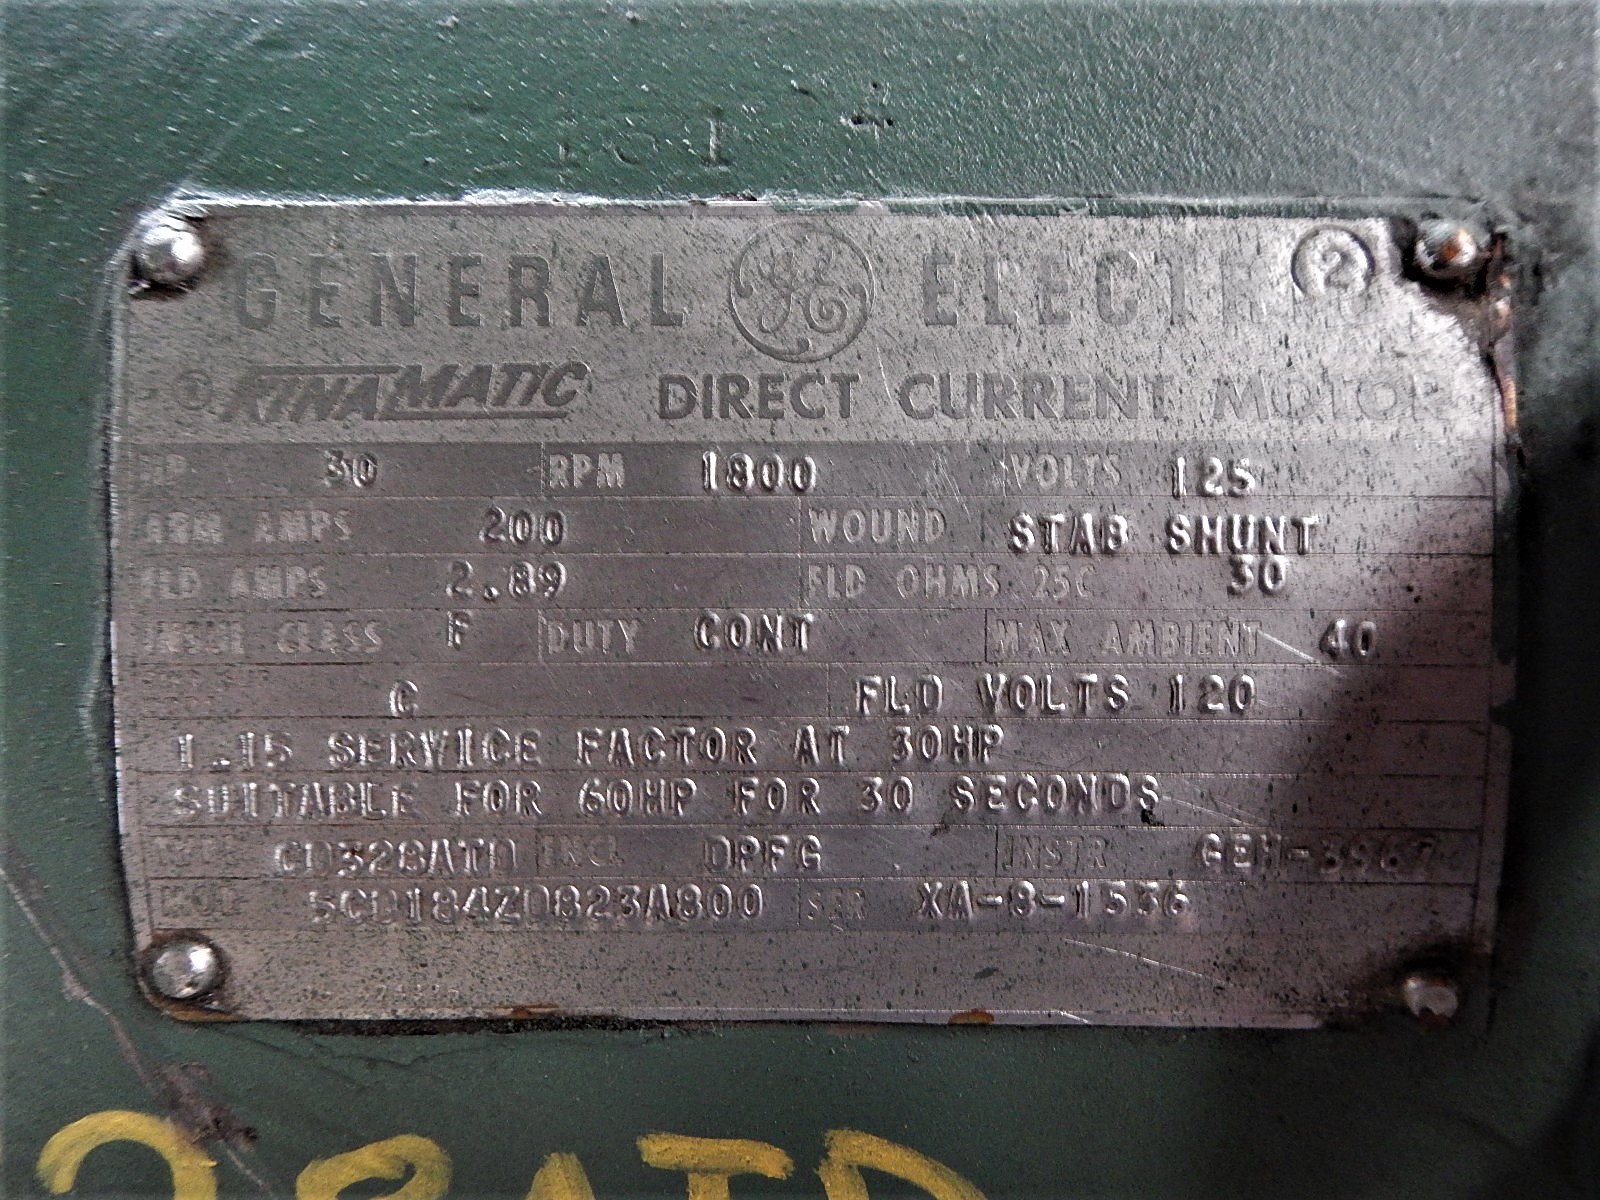 General Electric 30 HP 1800 RPM 328AT DC Motors 81191